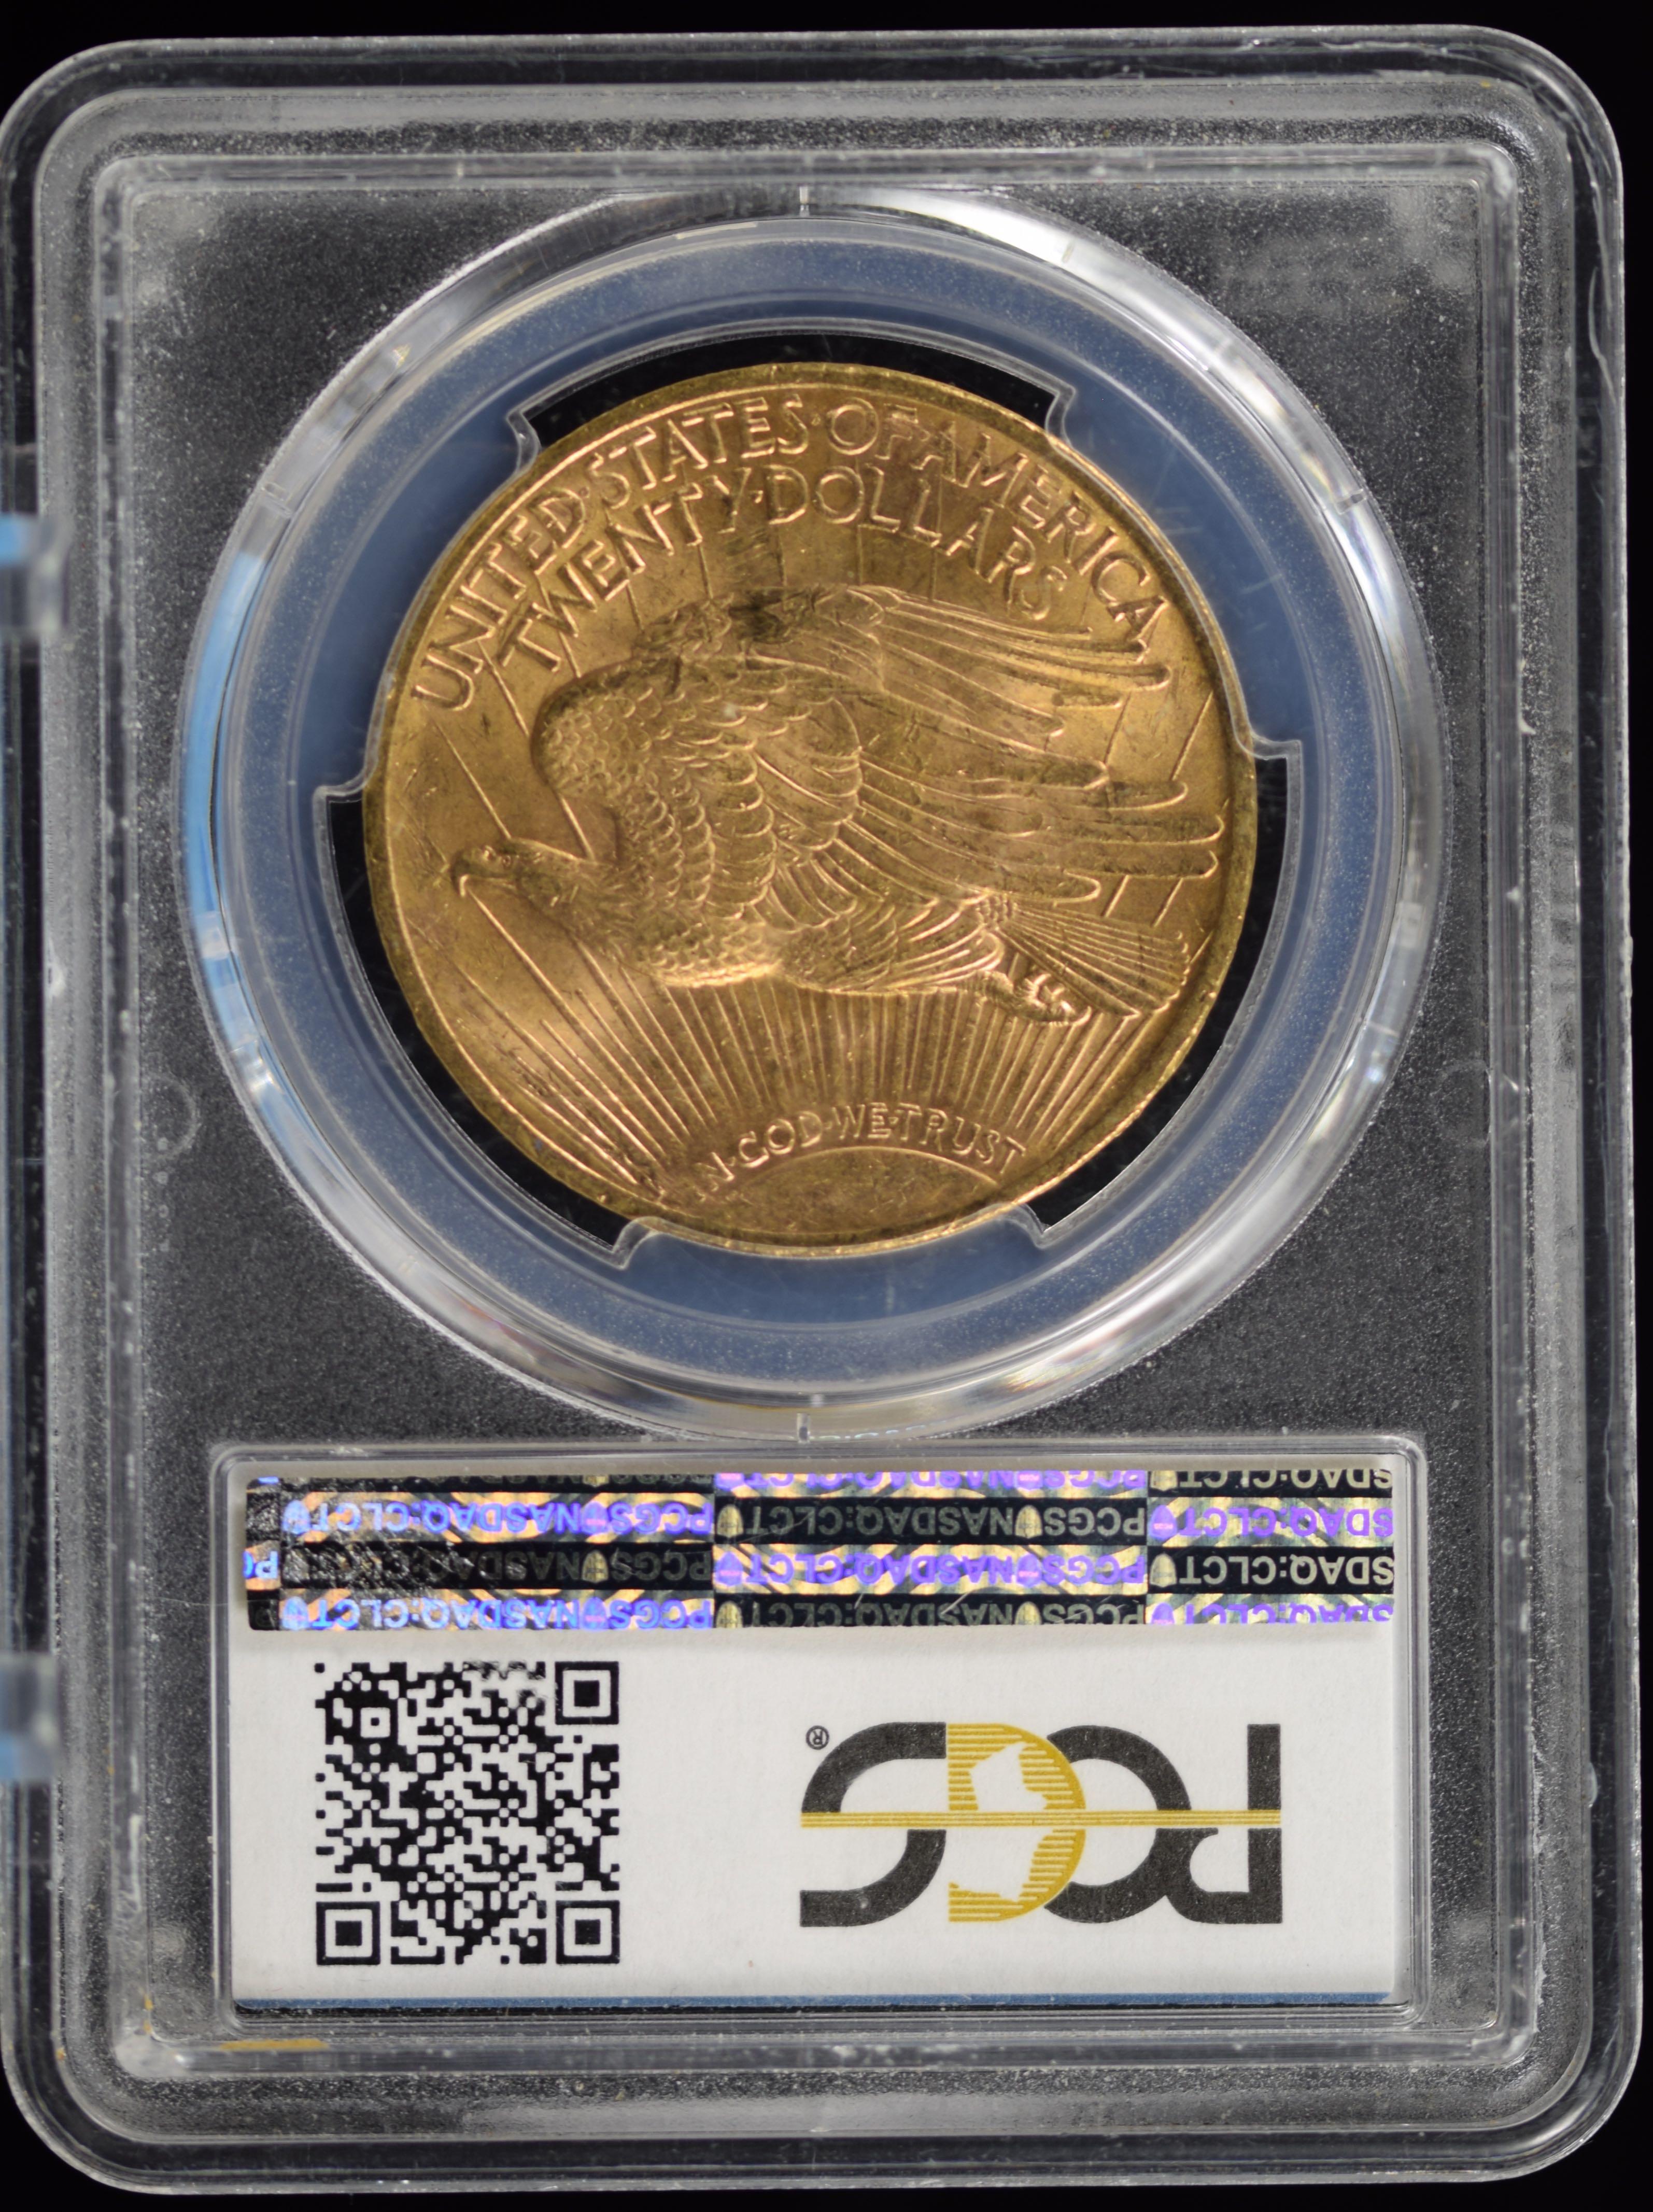 1923 St Gaudens Gold $20 Double Eagle PCGS M-63